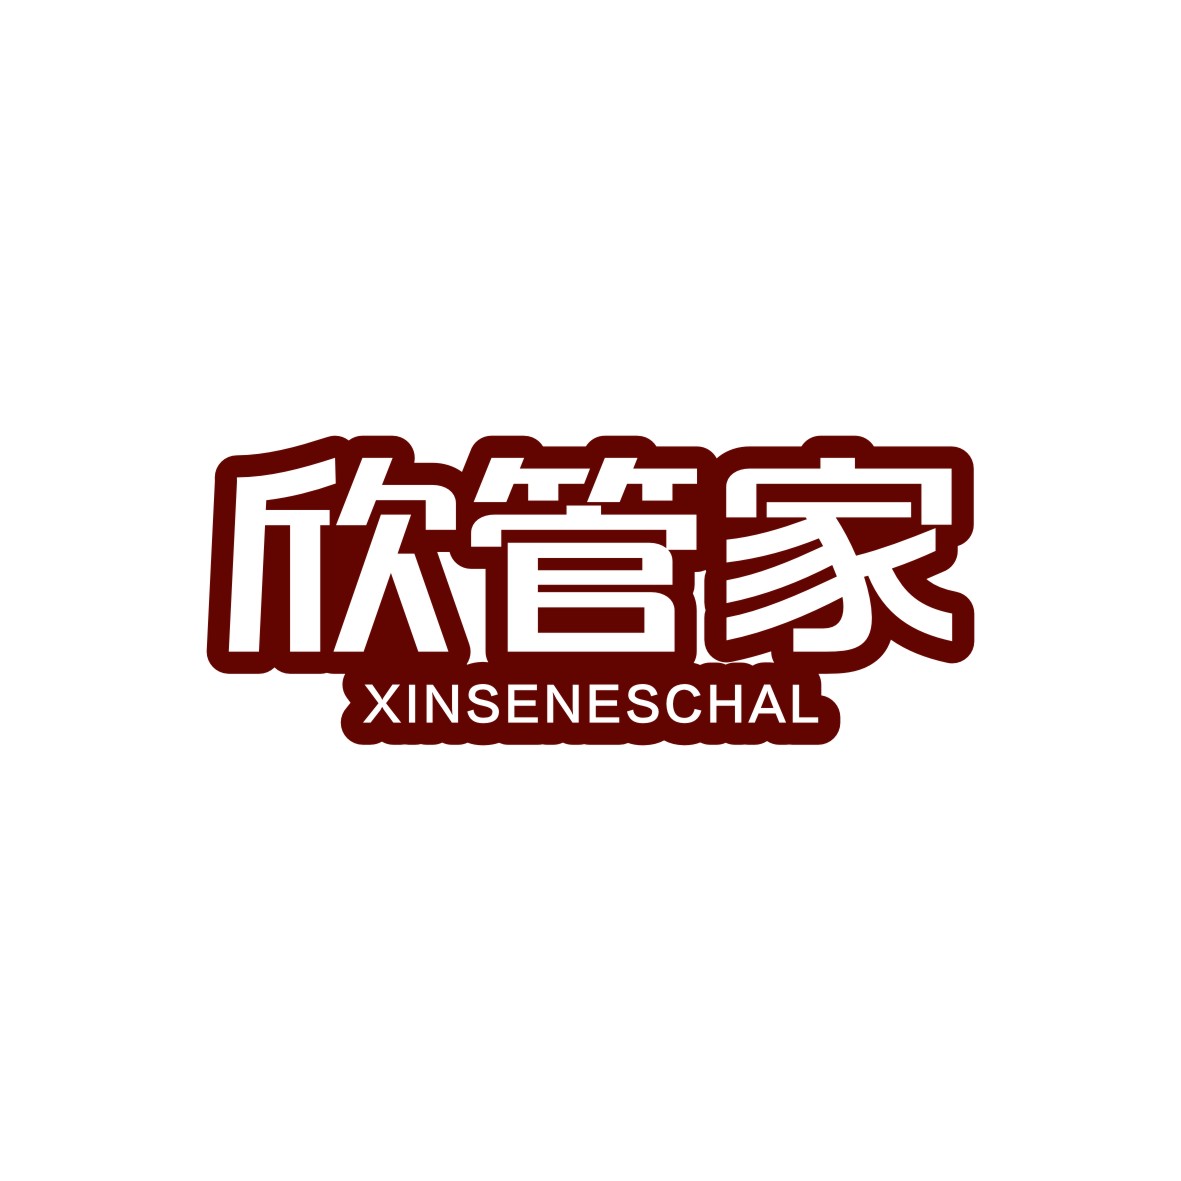 胡江礼商标欣管家 XINSENESCHAL（05类）商标买卖平台报价，上哪个平台最省钱？